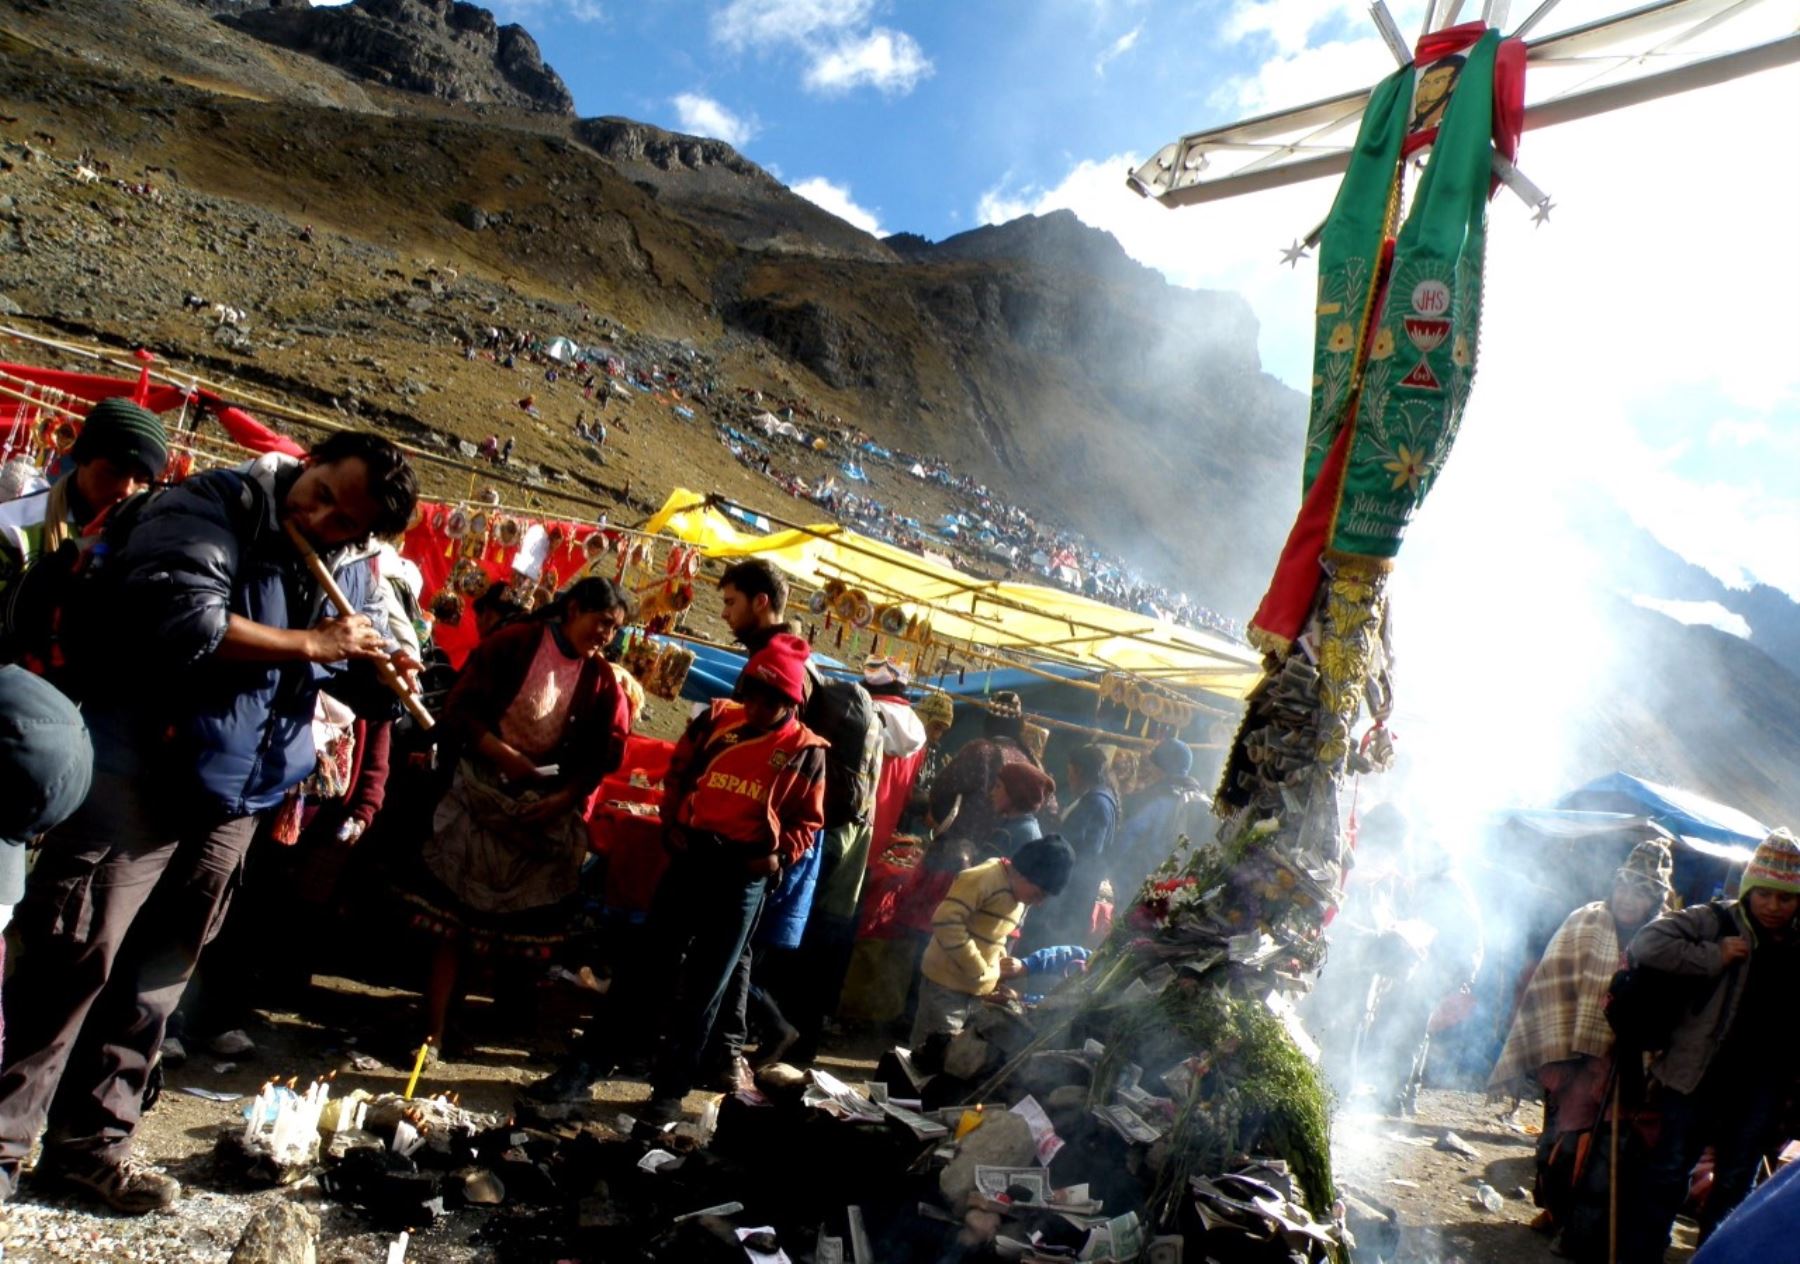 El Cosejo de Naciones Peregrinas de Cusco acordó cómo se realizará la peregrinación al Señor de Qoyllur Riti en el nevado Colquepunku. ANDINA/Percy Hurtado